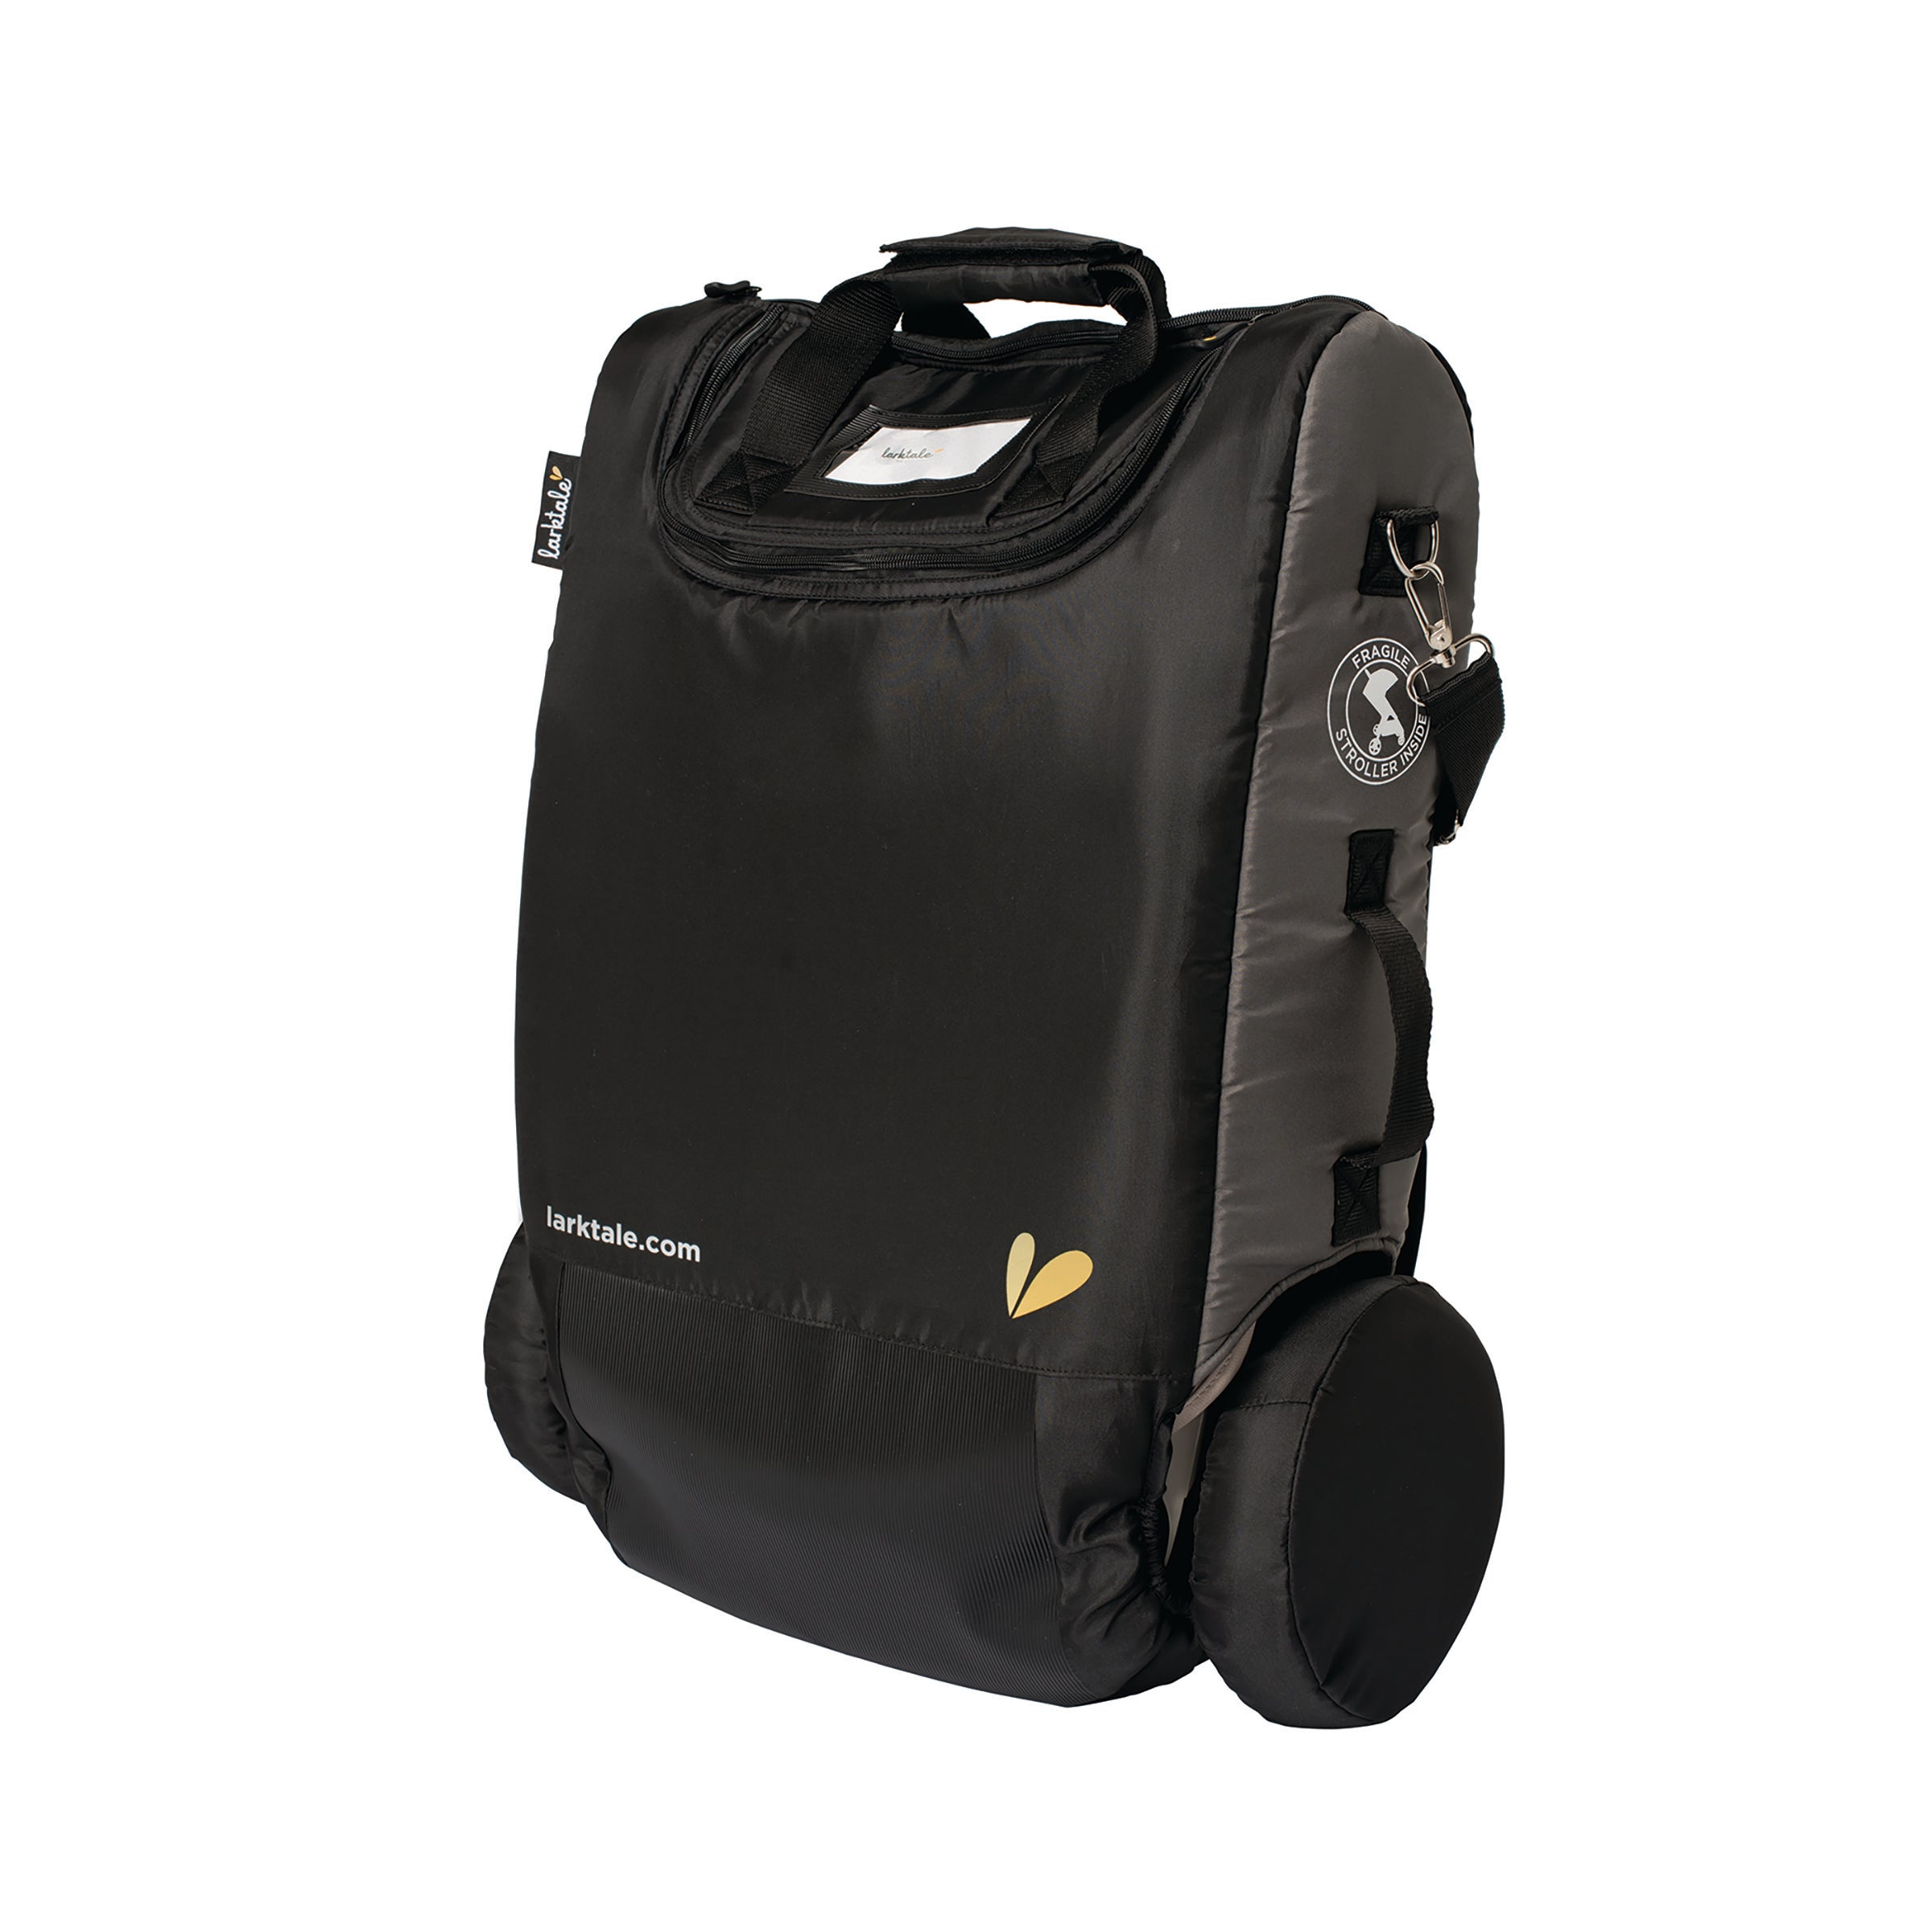 stroller travel cover bag